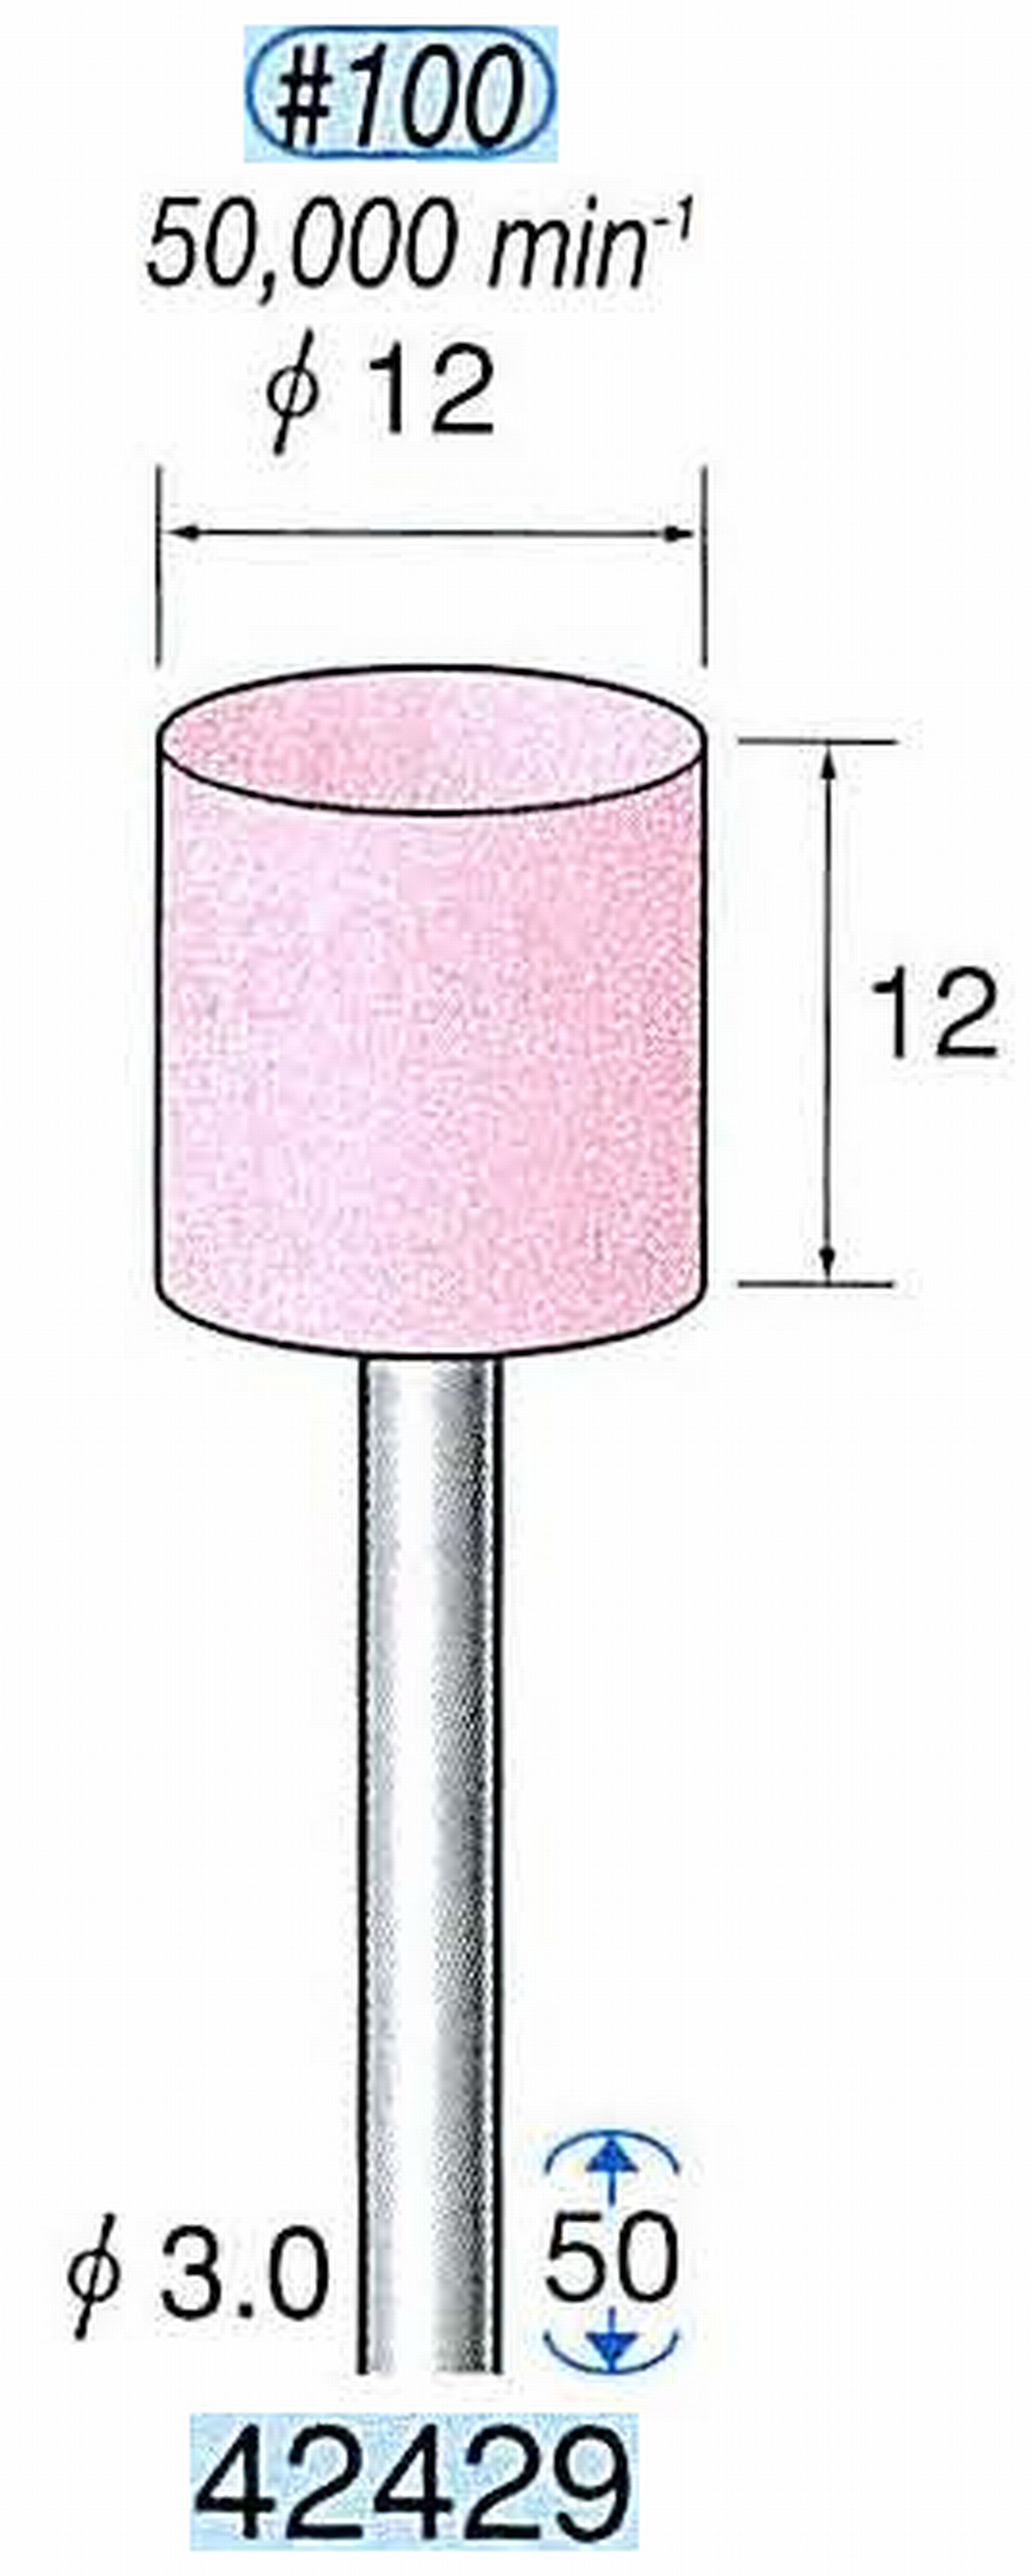 ナカニシ/NAKANISHI 軸付砥石(WA砥粒) 一般研削用 軸径(シャンク) φ3.0mm 42429